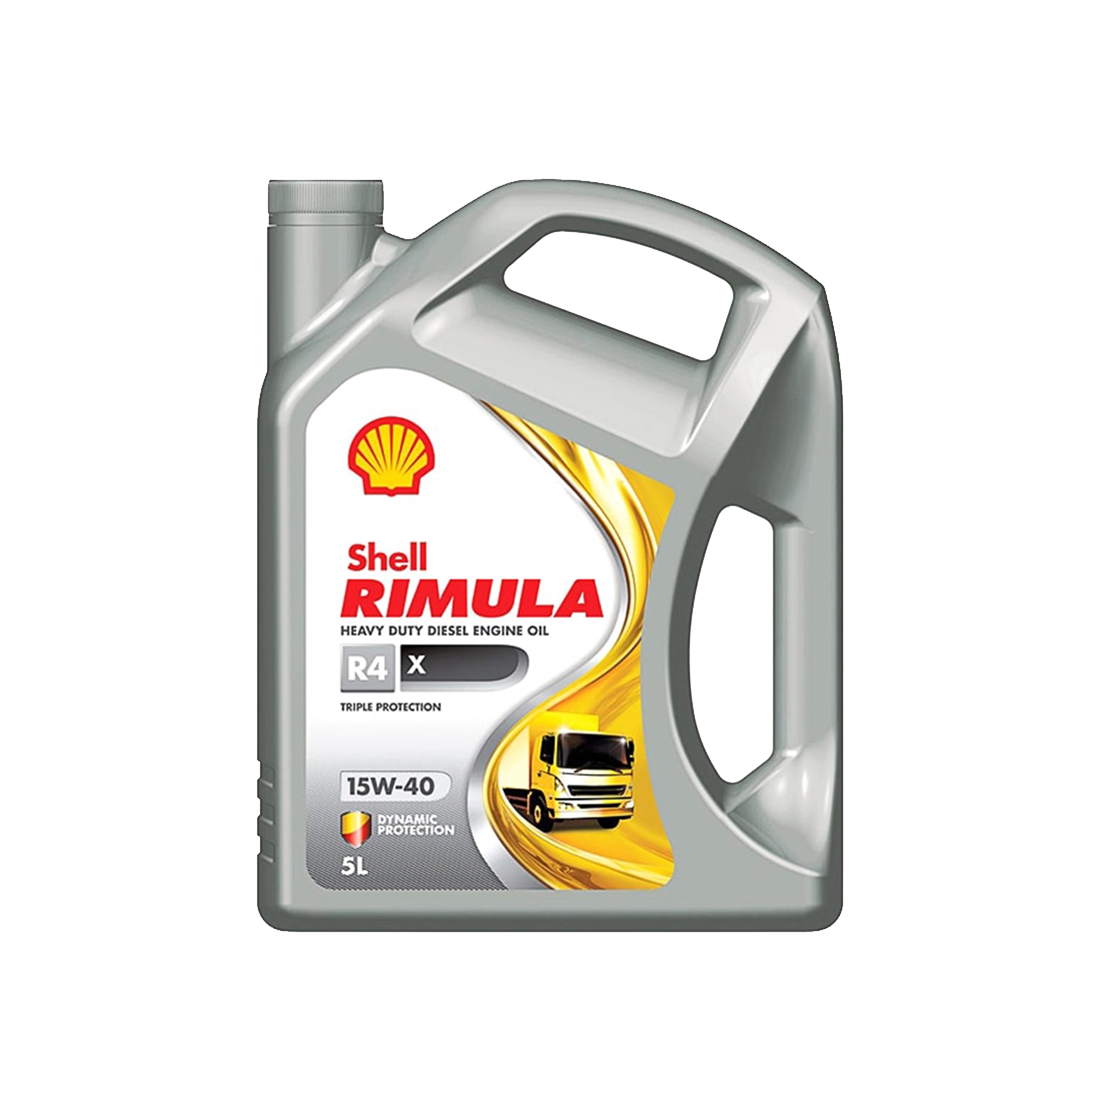 Motorolja Shell Rimula R4 X 15W-40, 5L